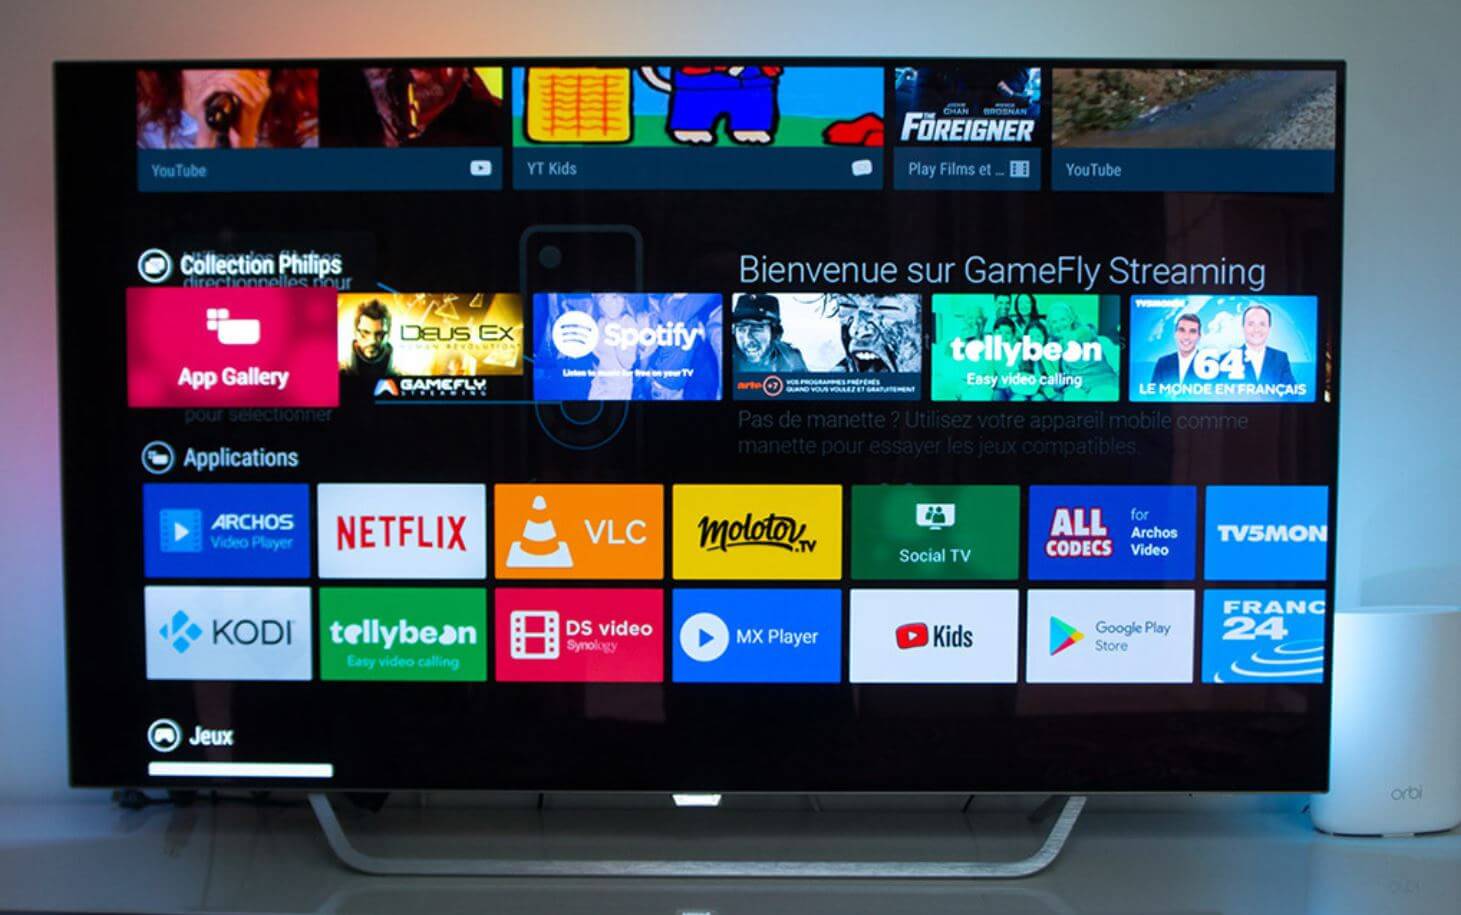 Apk на телевизор lg. Операционная система Tizen в телевизоре Samsung что это. Телевизор LG Tizen. ОС Smart TV. Андроид ТВ.